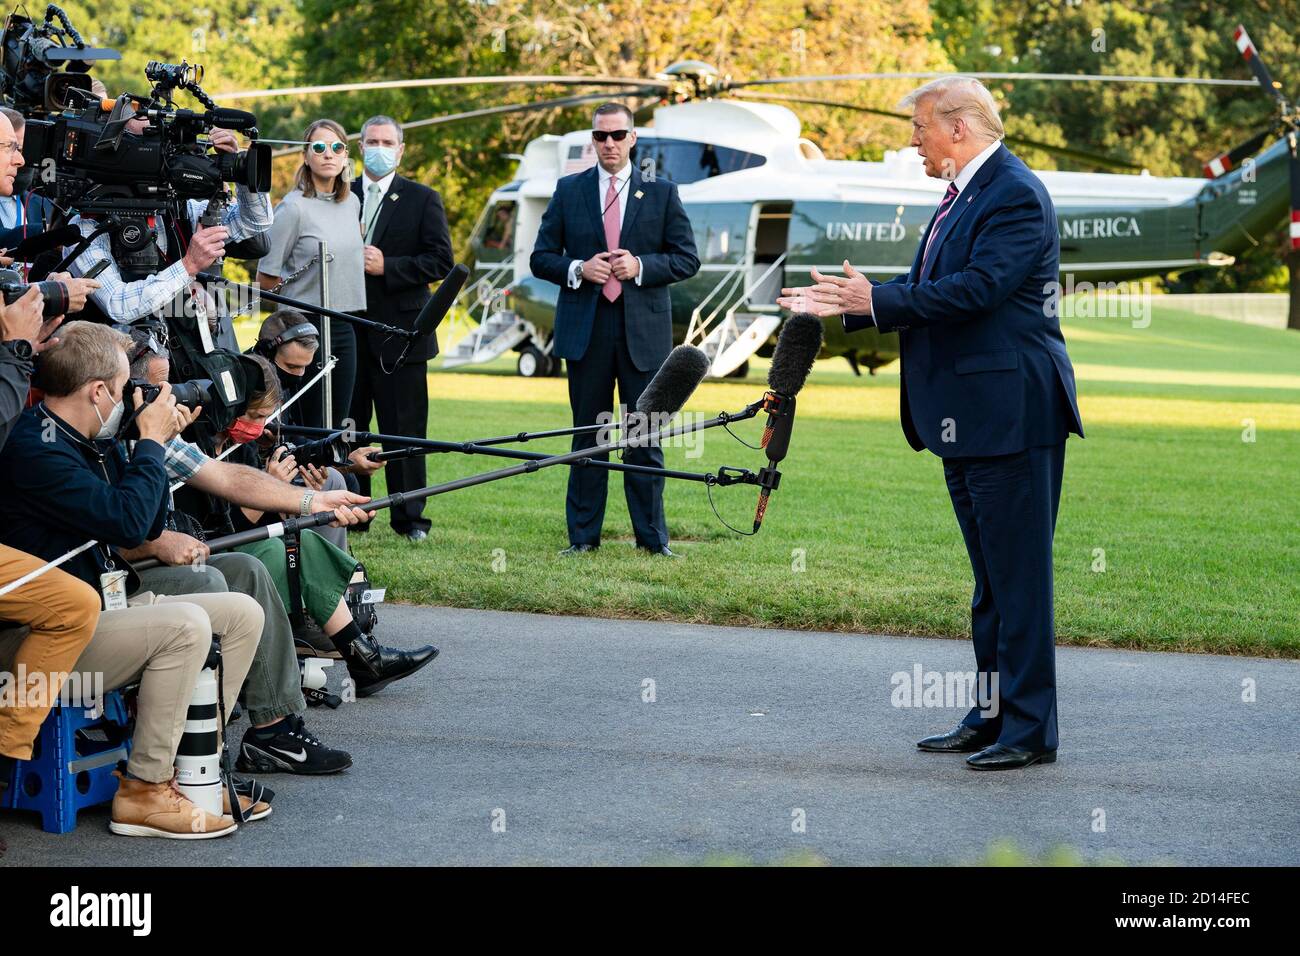 Präsident Trump reist nach PA. Präsident Donald J. Trump spricht mit Pressemitgliedern entlang der South Lawn Auffahrt des Weißen Hauses Dienstag, 22. September 2020, bevor er Marine One auf dem Weg zur Joint Base Andrews, MD. Besteigen sollte, um seine Reise nach Pennsylvania zu beginnen. Stockfoto